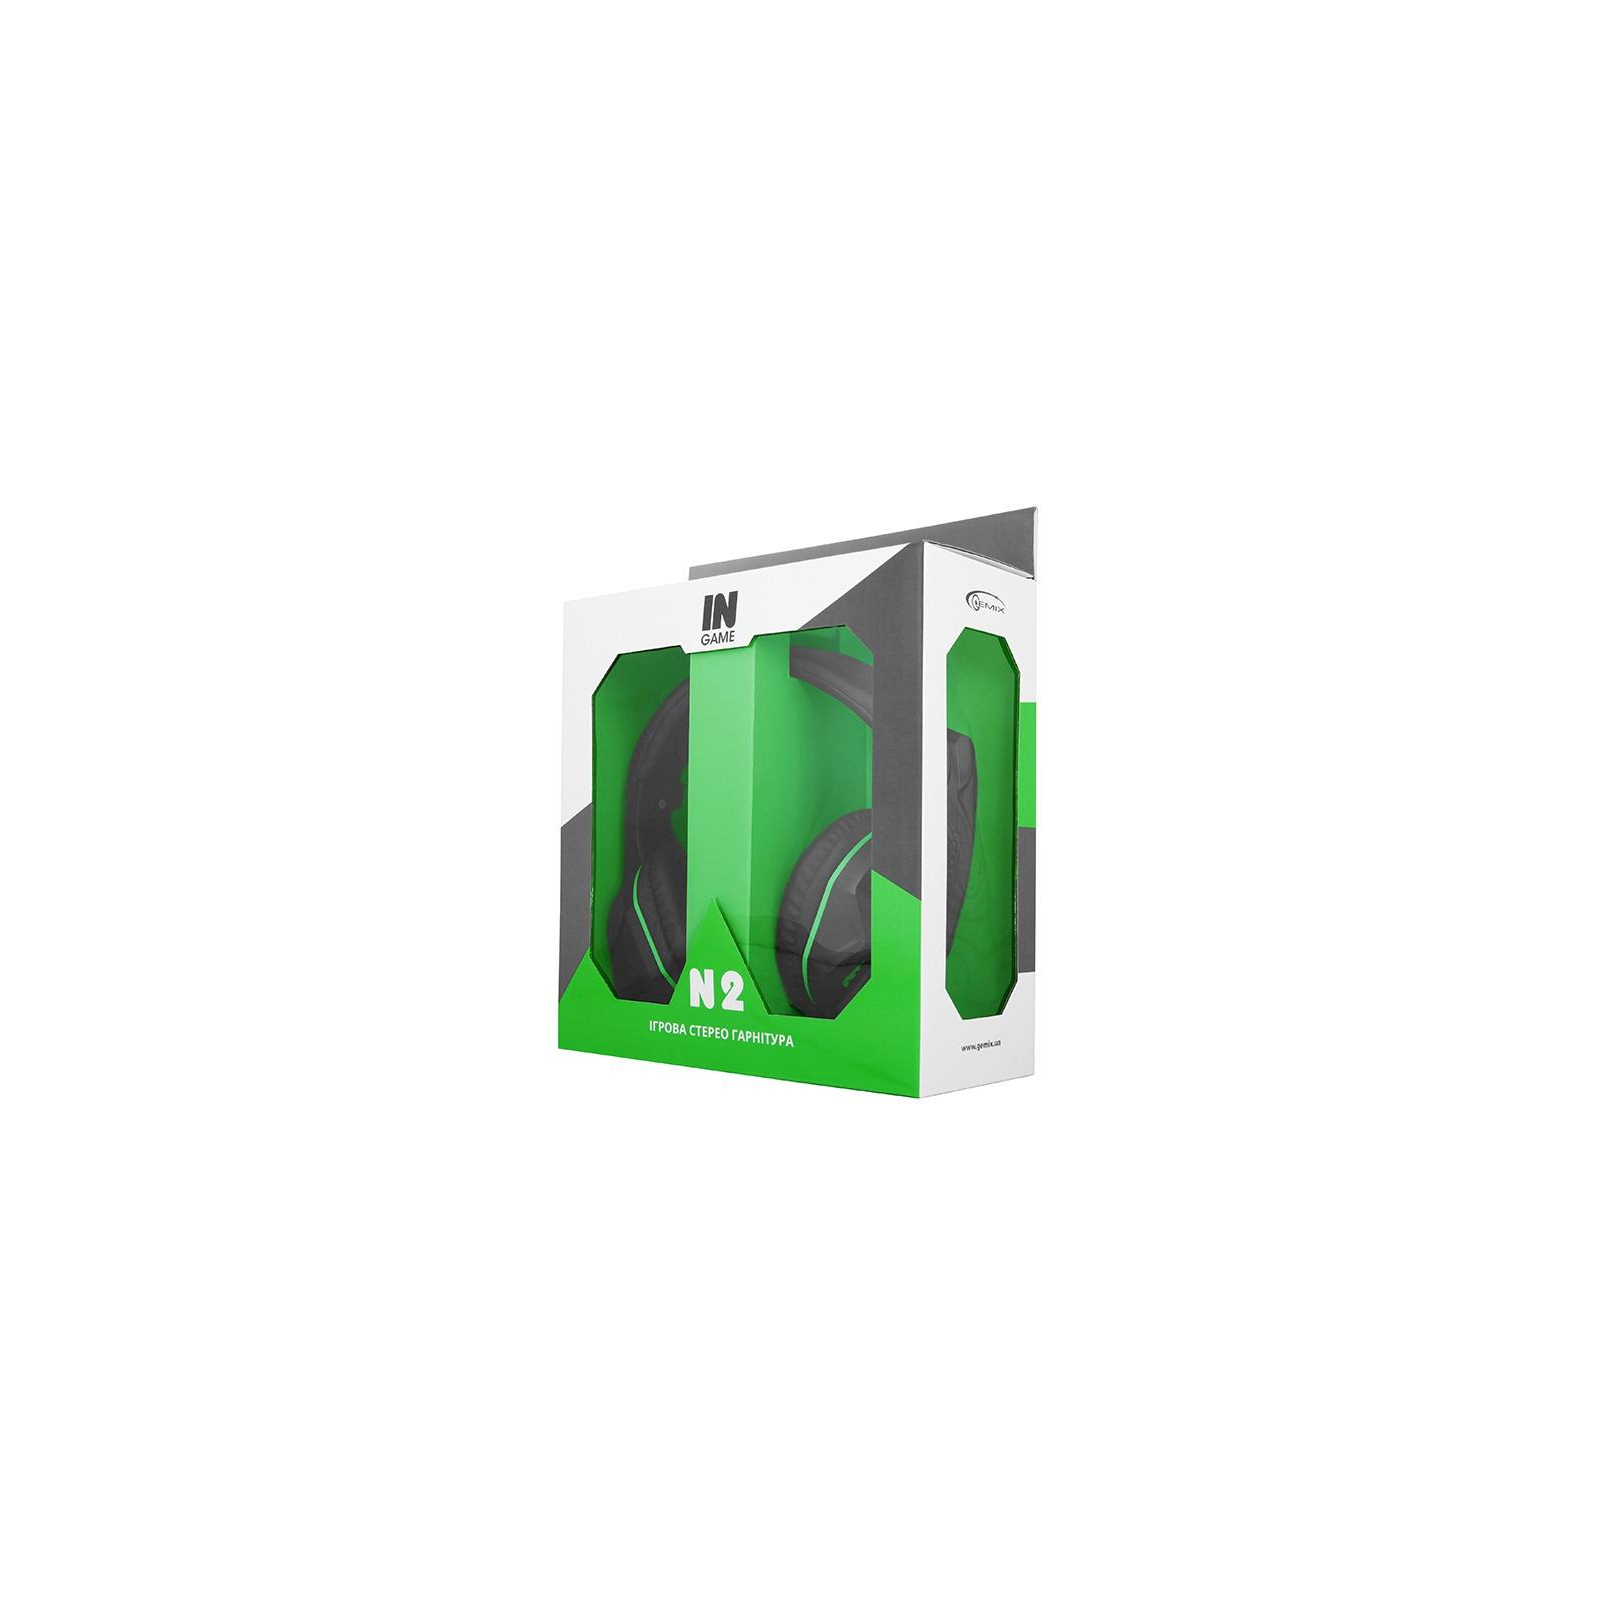 Наушники Gemix N2 LED Black-Green Gaming изображение 5